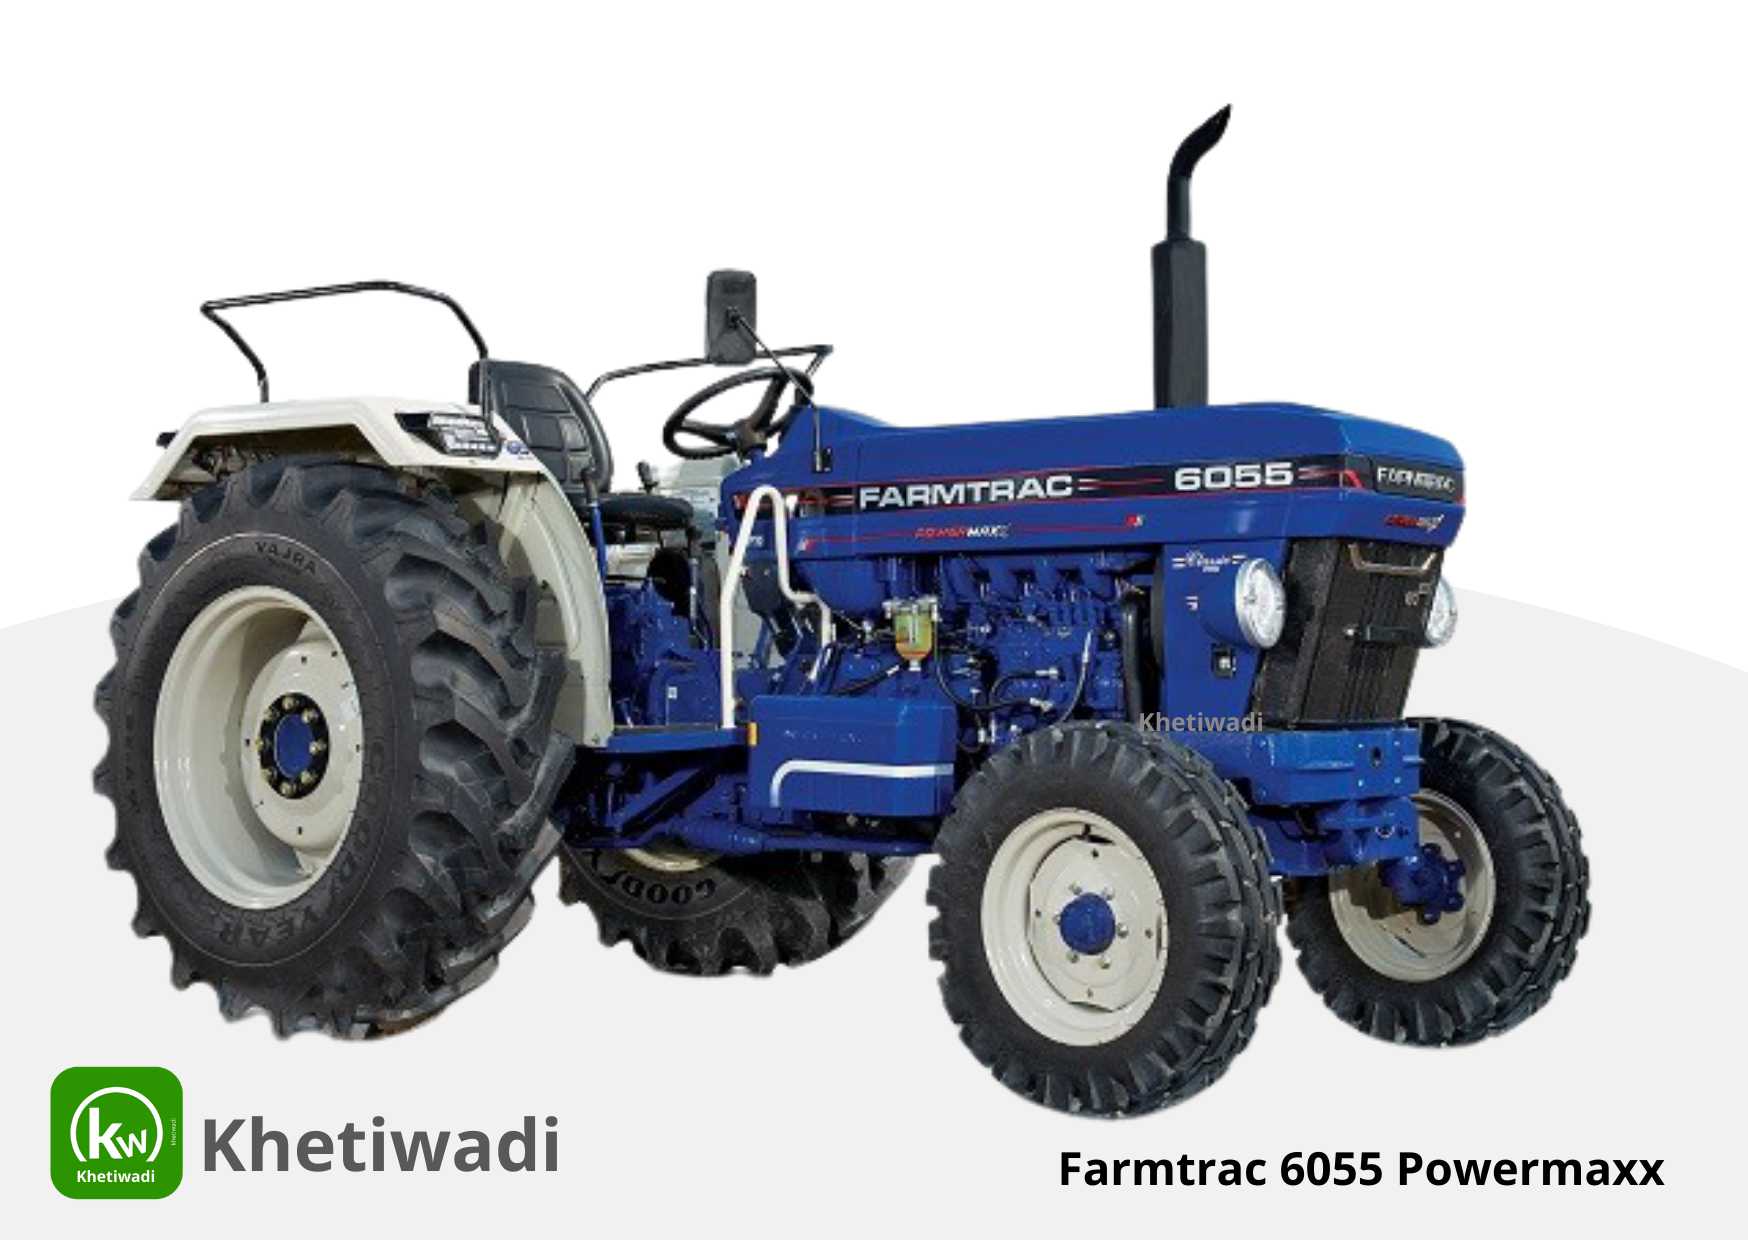 Farmtrac 6055 Powermaxx image